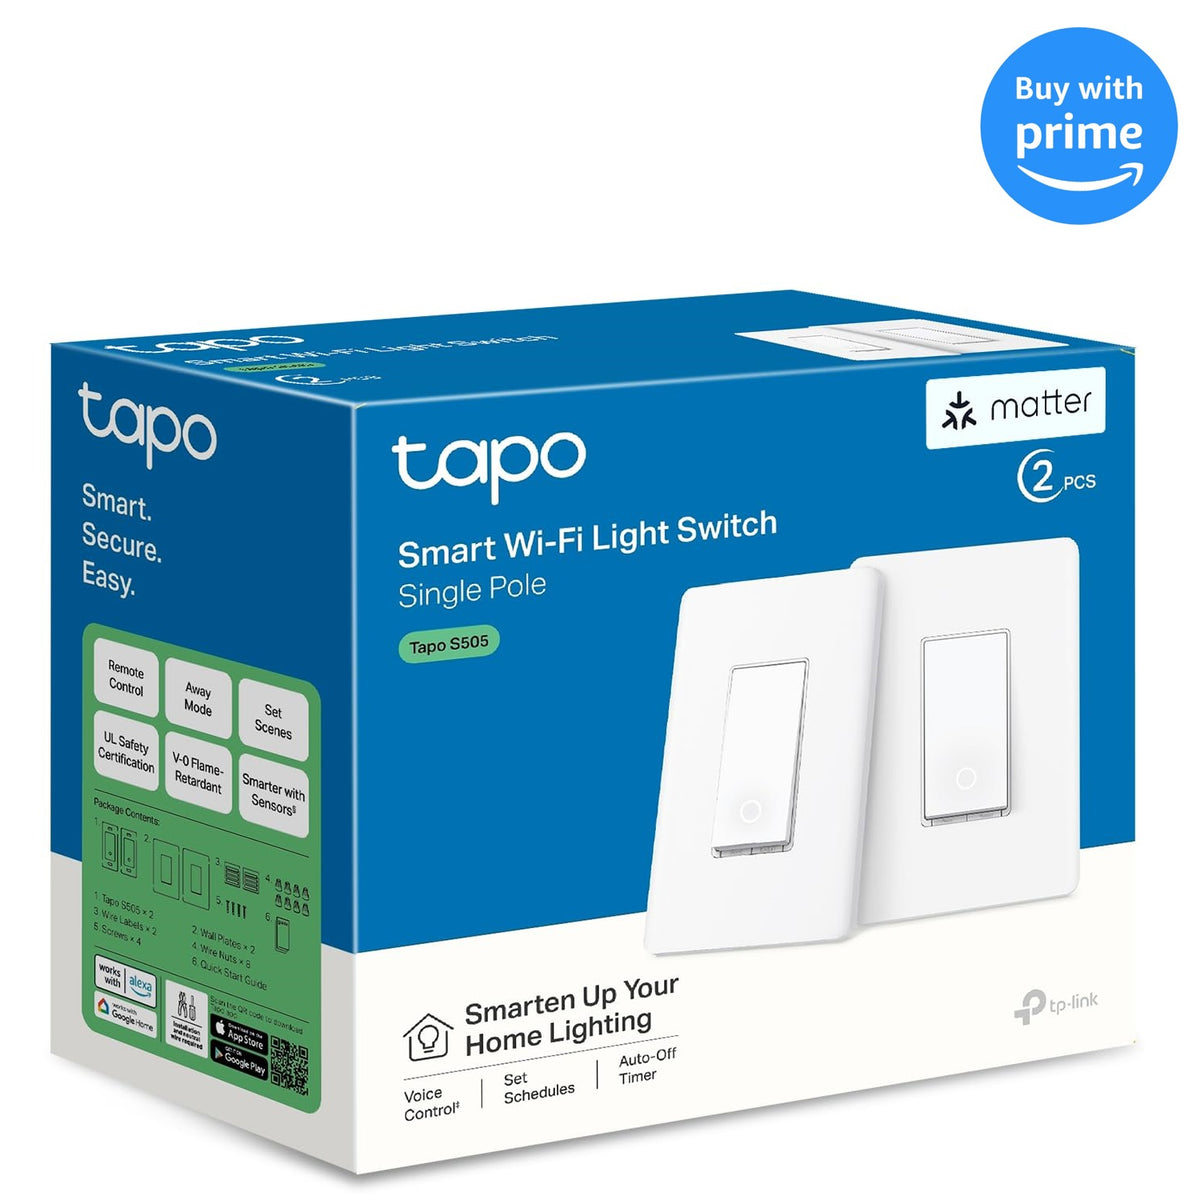 TP-LINK Tapo L920-5 - Accessoires Apple HomeKit - Garantie 3 ans LDLC